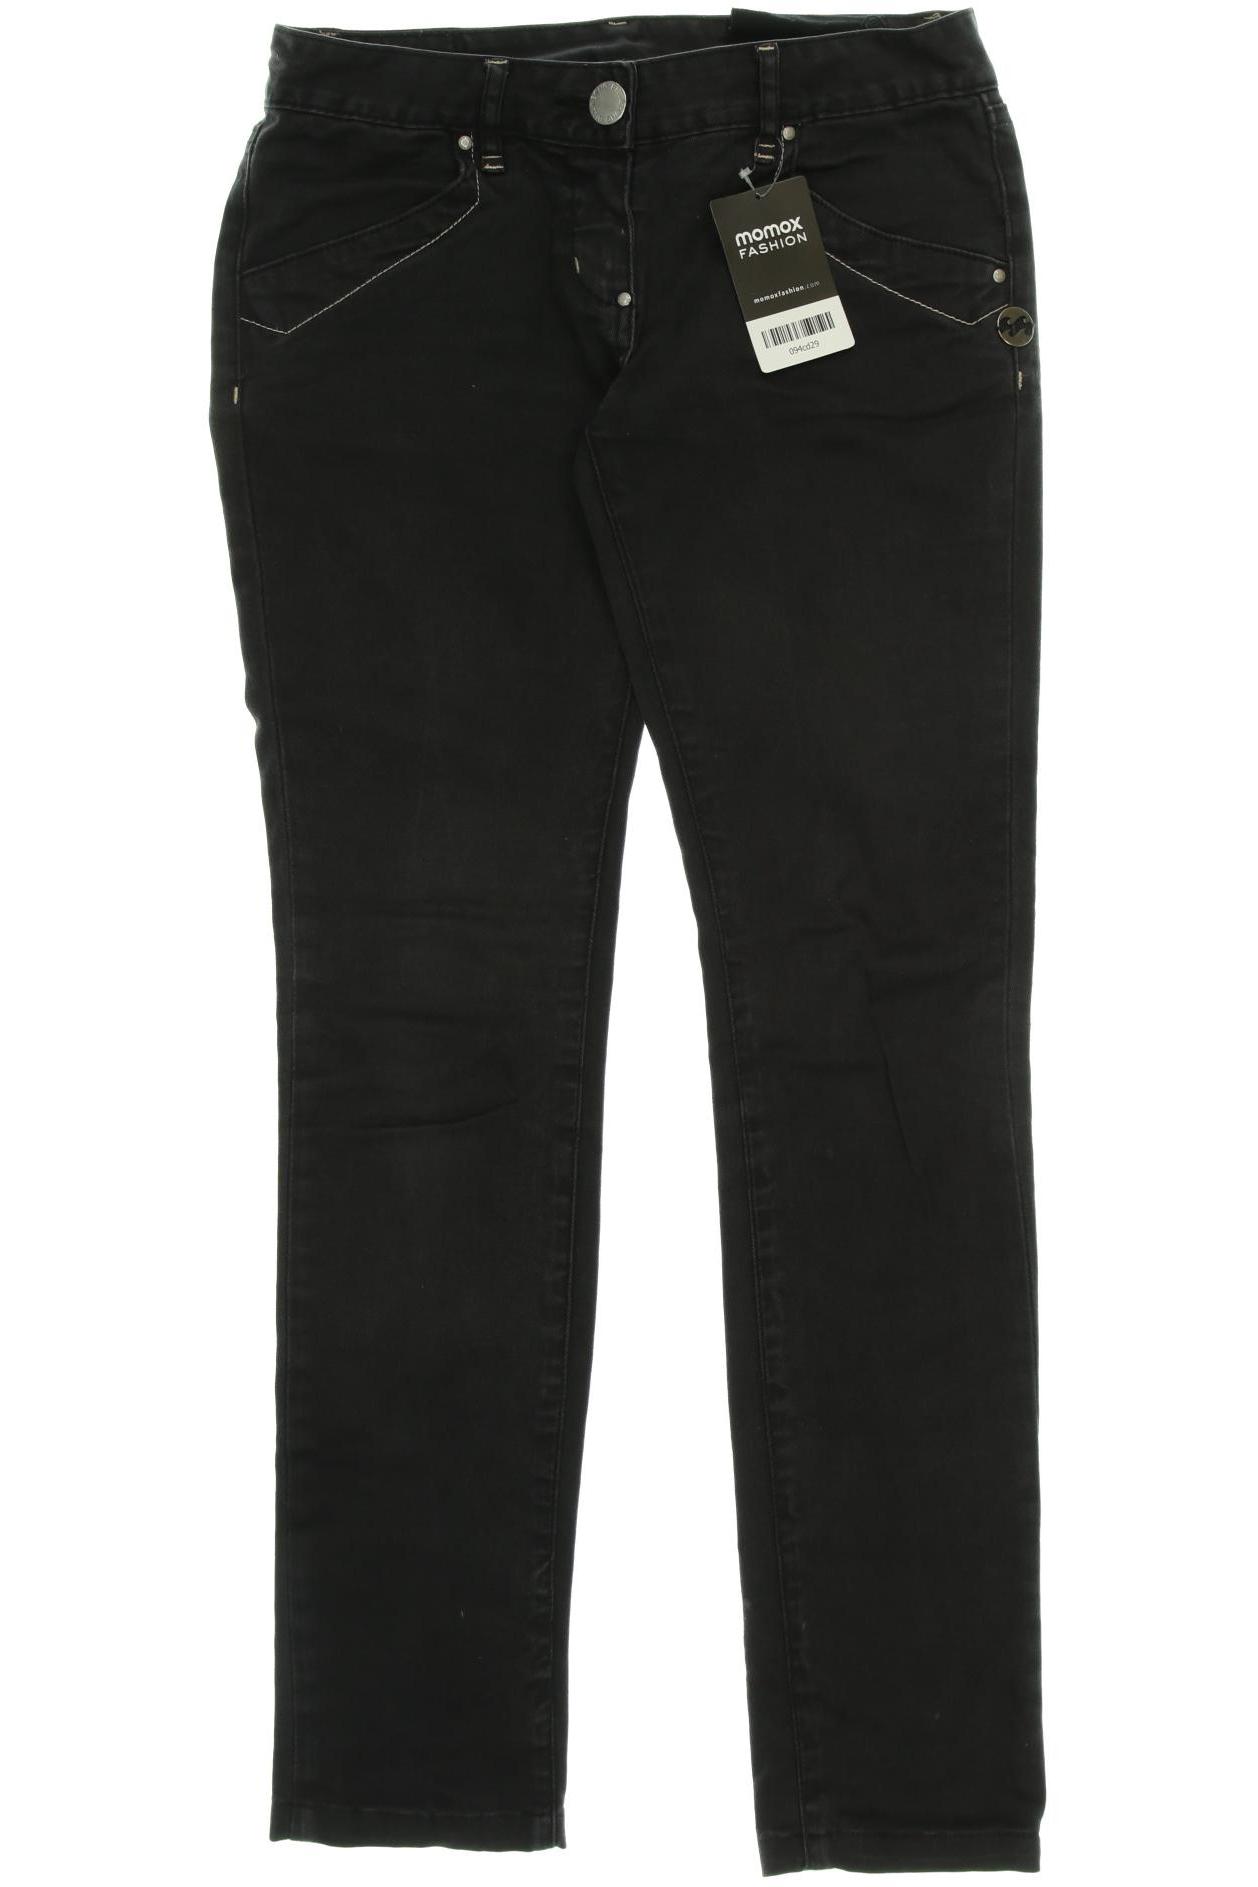 BILLABONG Damen Jeans, schwarz von Billabong